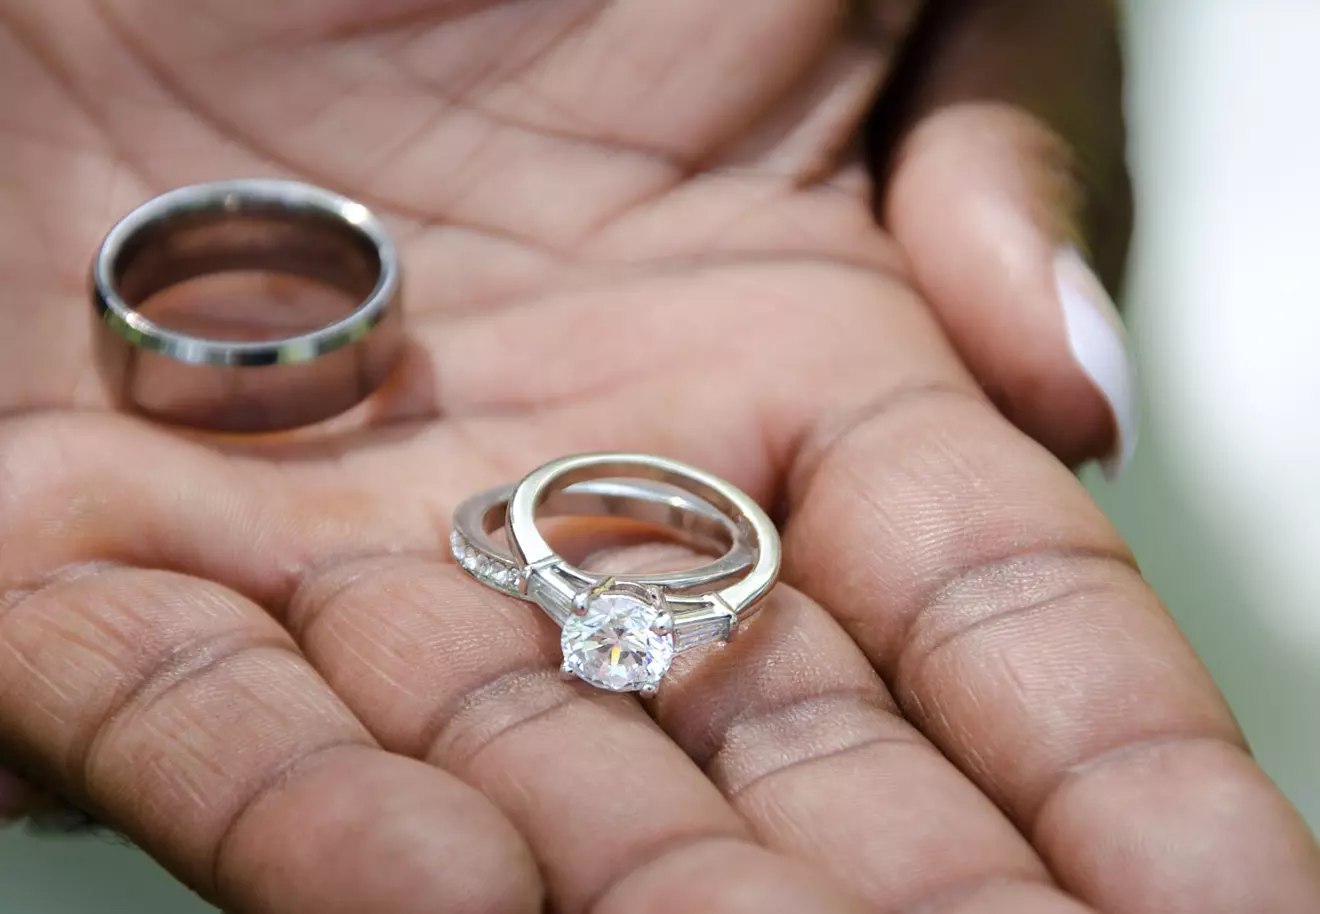 Engagement rings carry dangerous bacteria, nurse researchers find